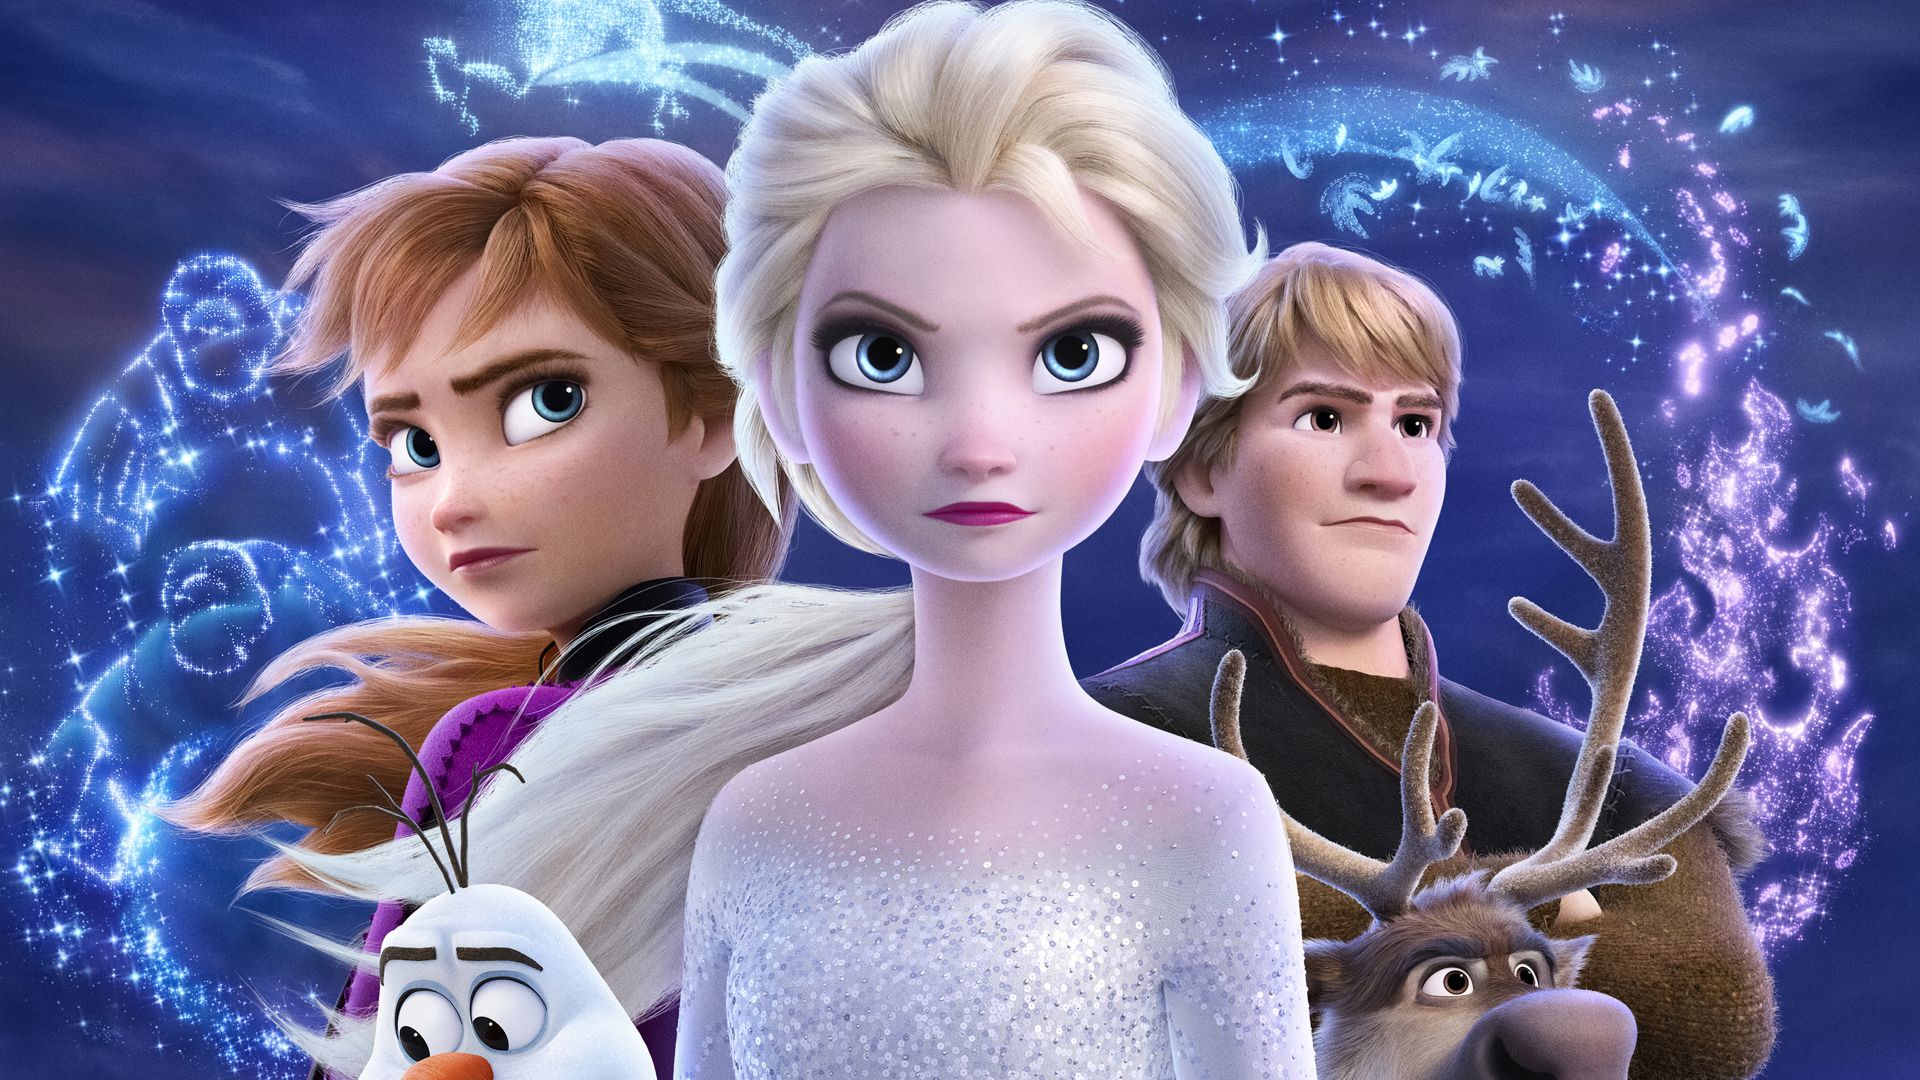 Download Frozen Movie On Mac